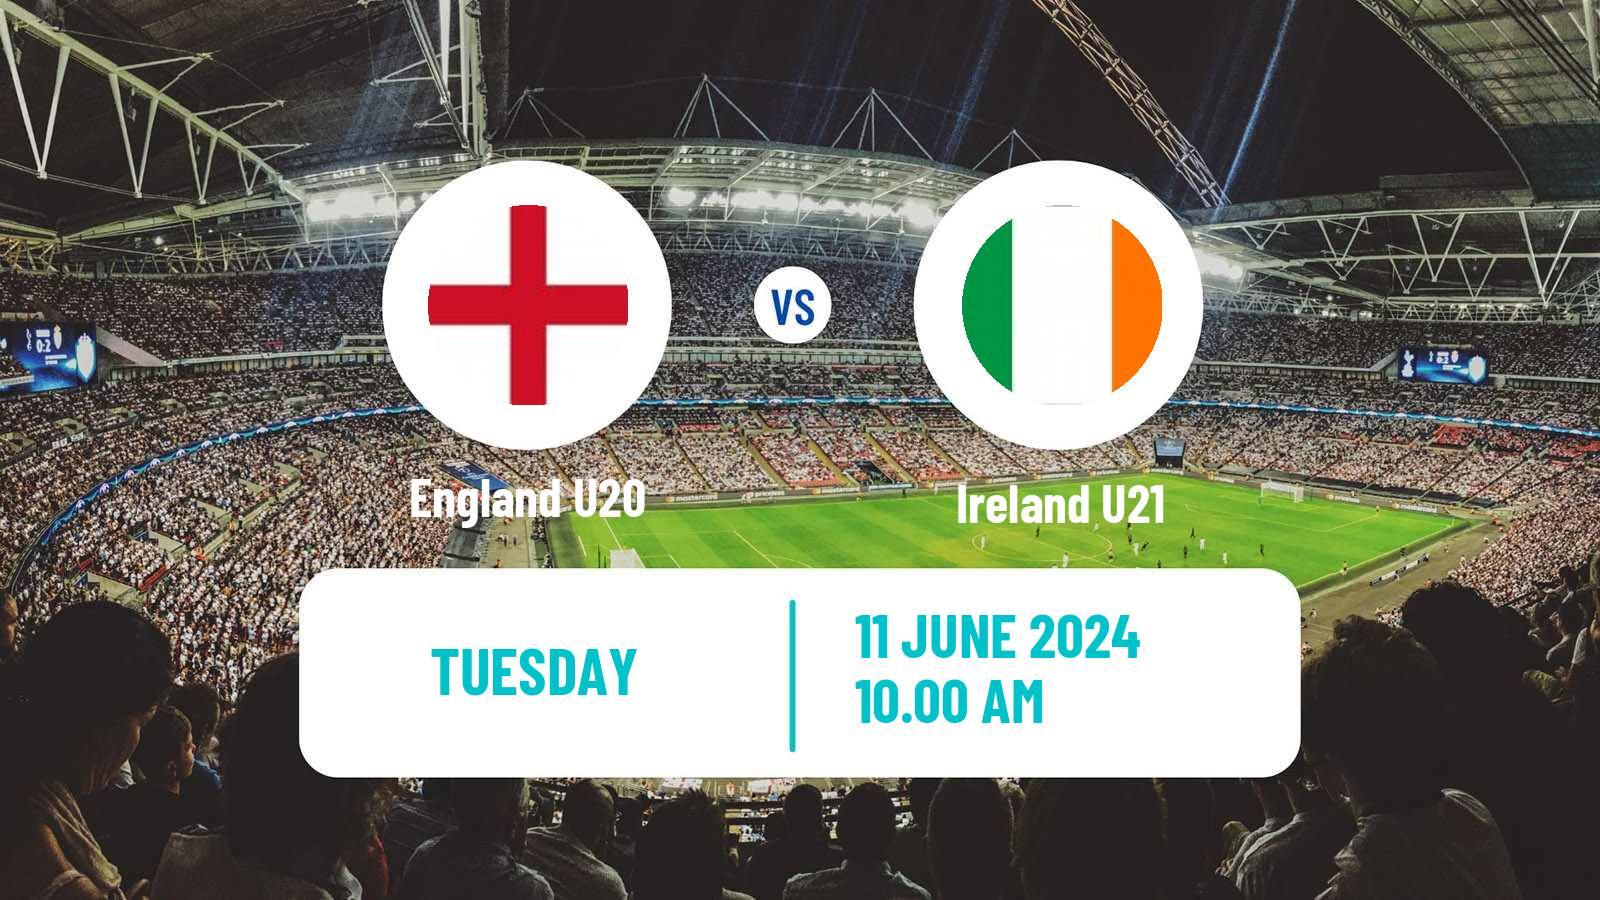 Soccer Friendly England U20 - Ireland U21